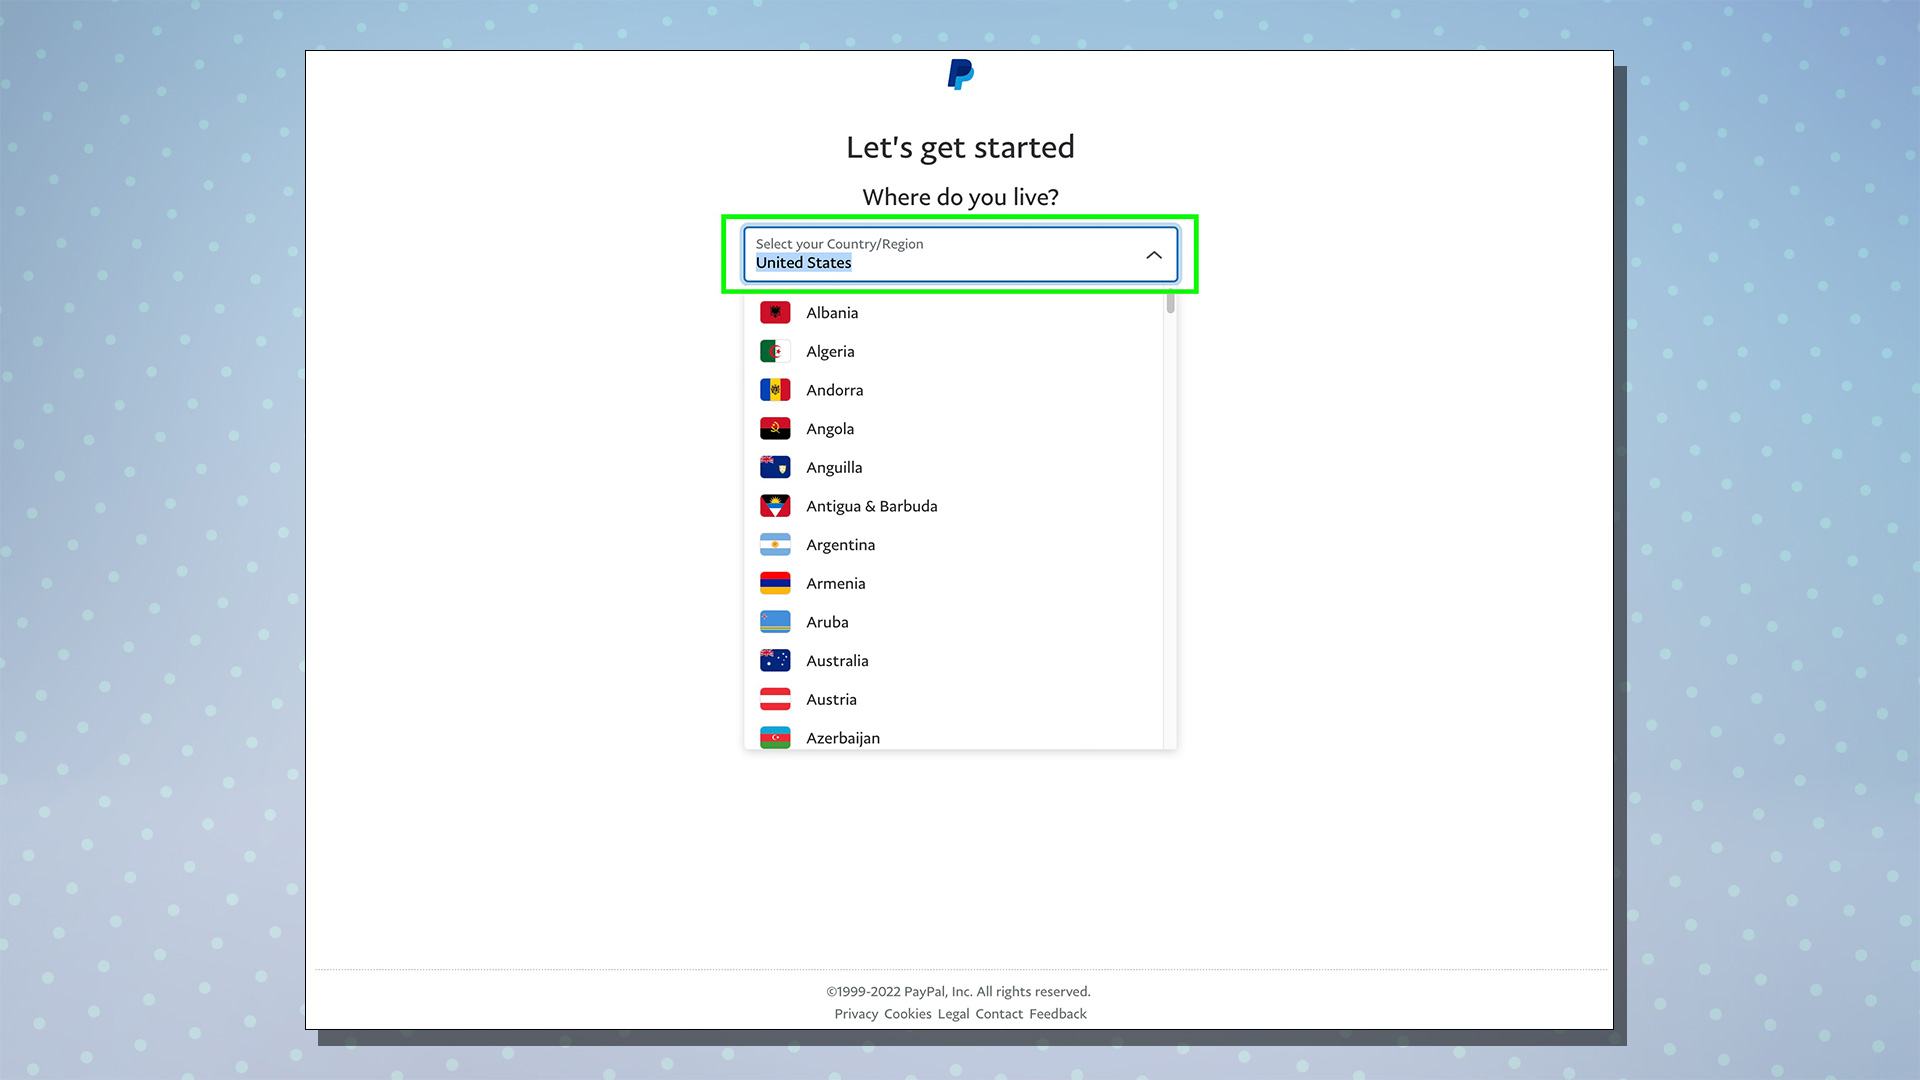 PayPal kurulum sürecini gösteren bir ekran görüntüsü.  Bu ekran ülke seçim seçeneklerini gösterir